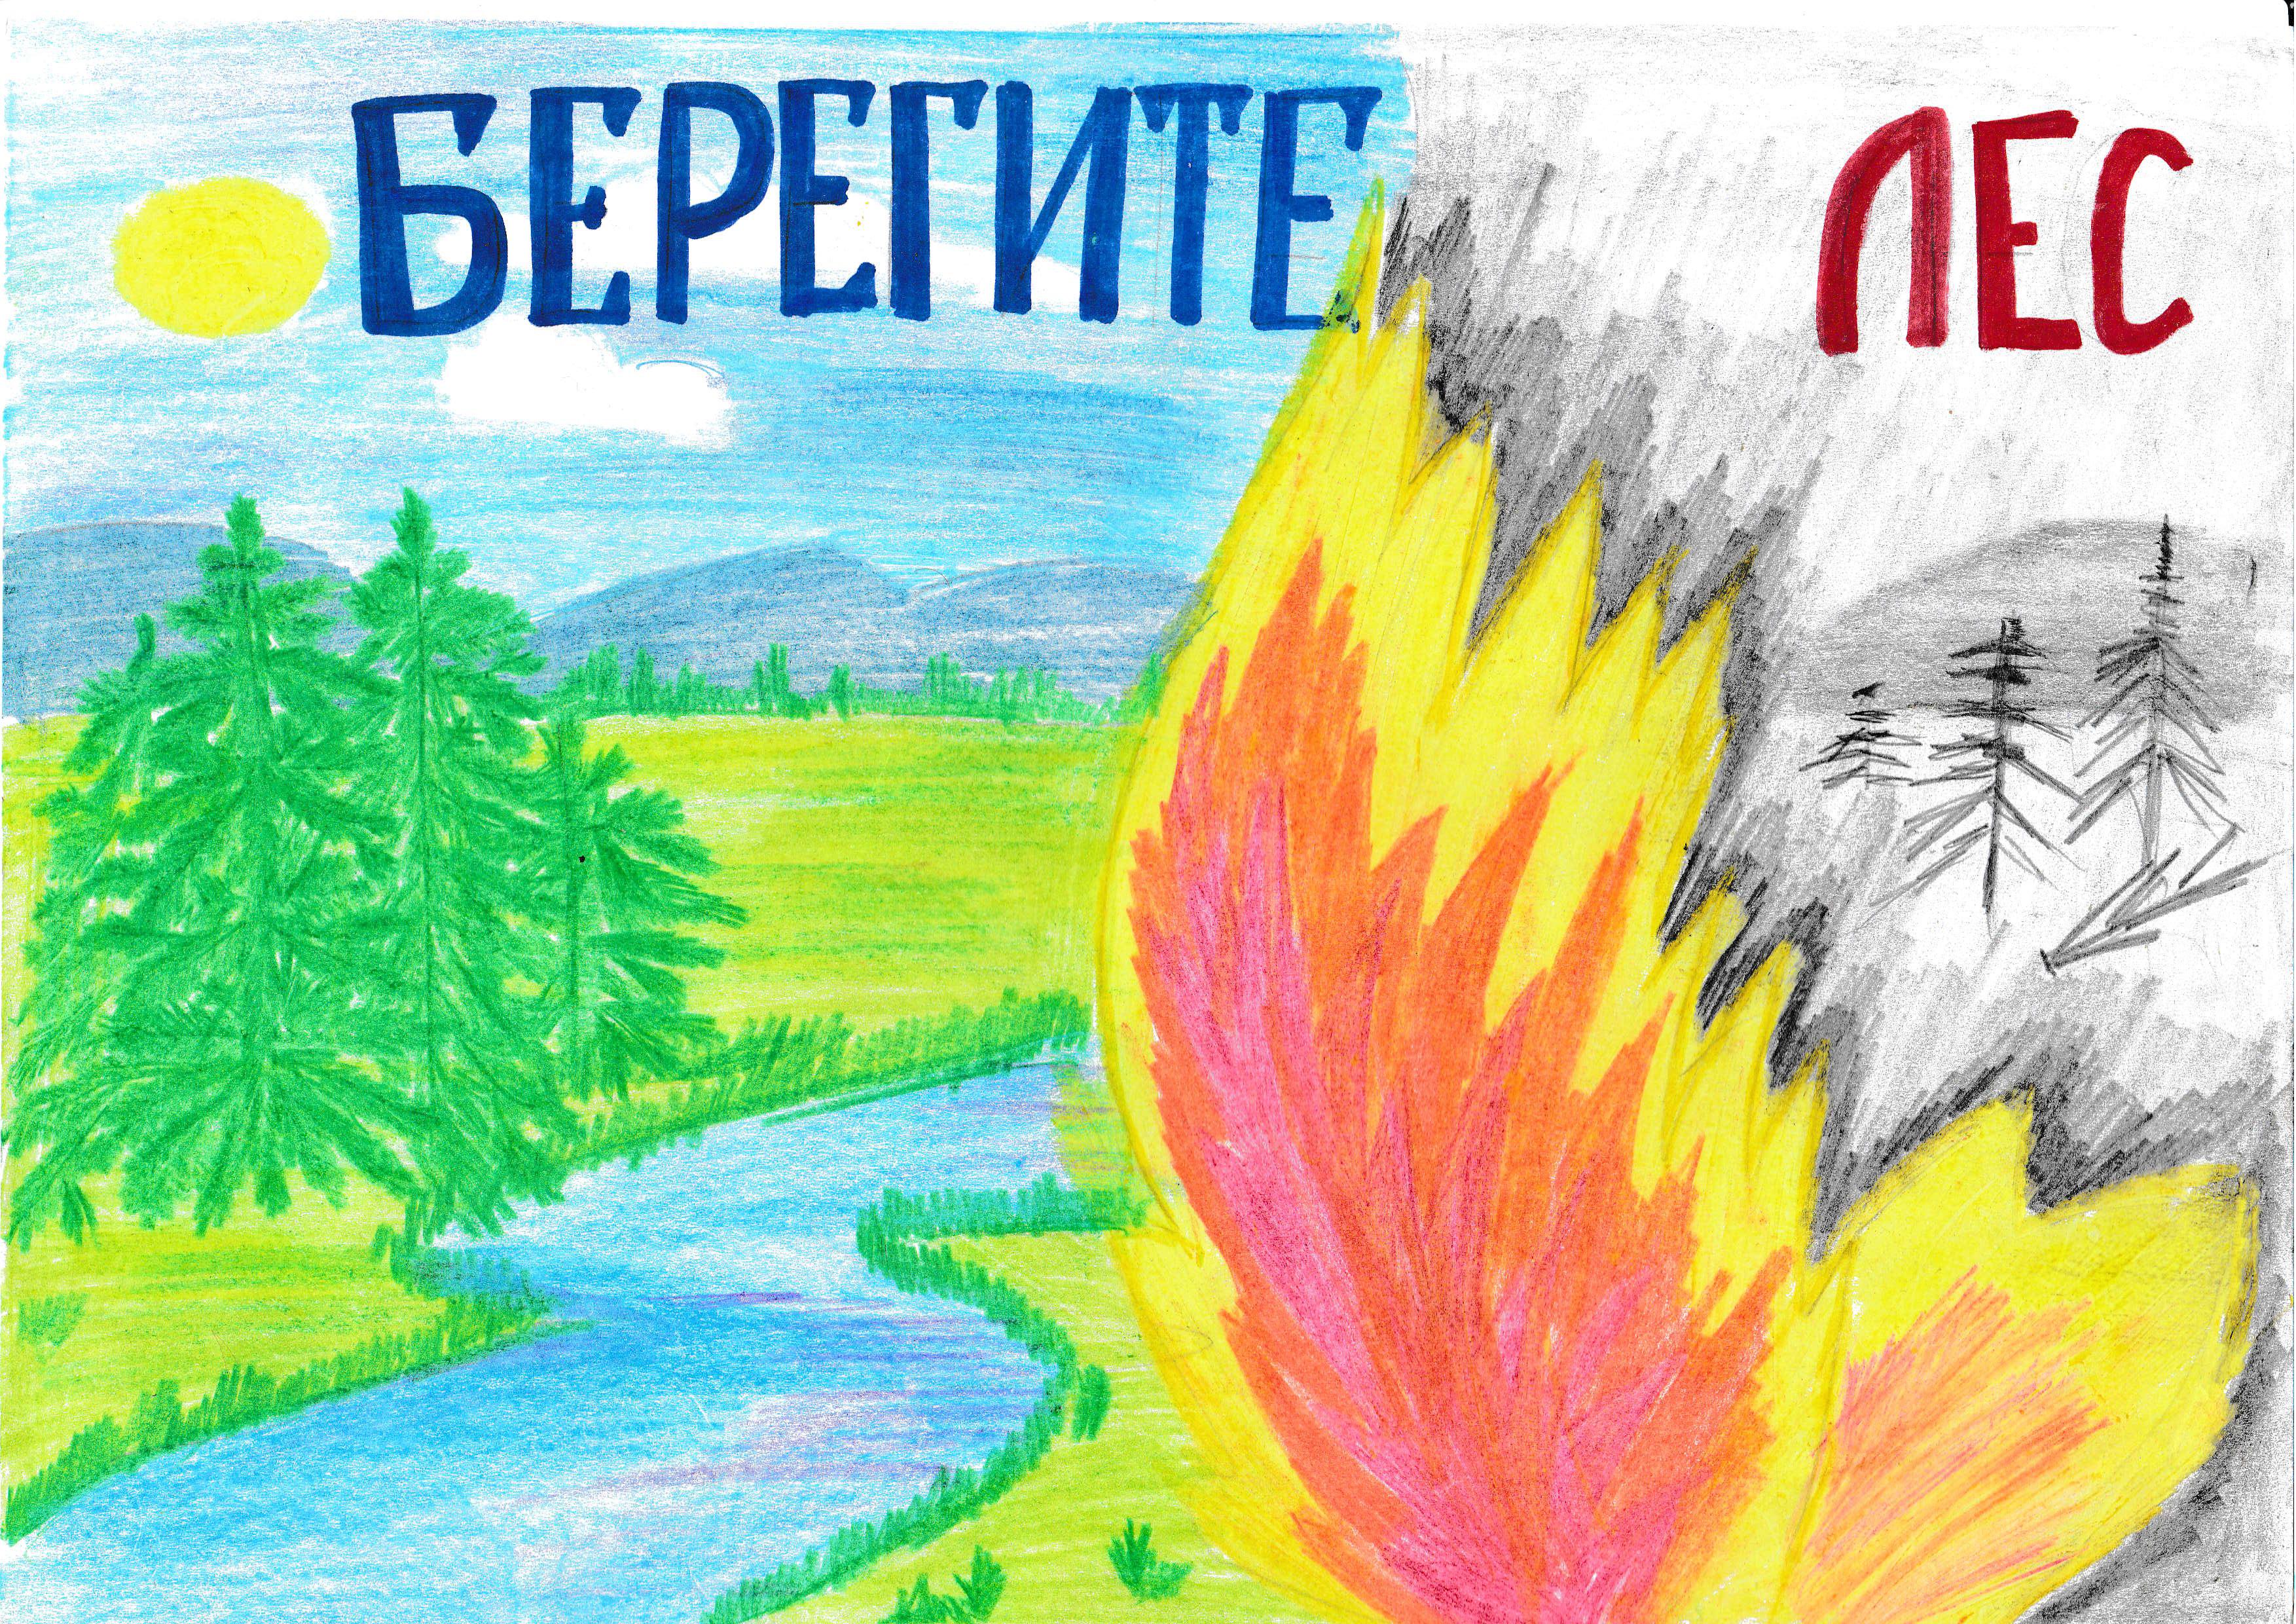 Рисунок на тему берегите лес от огня